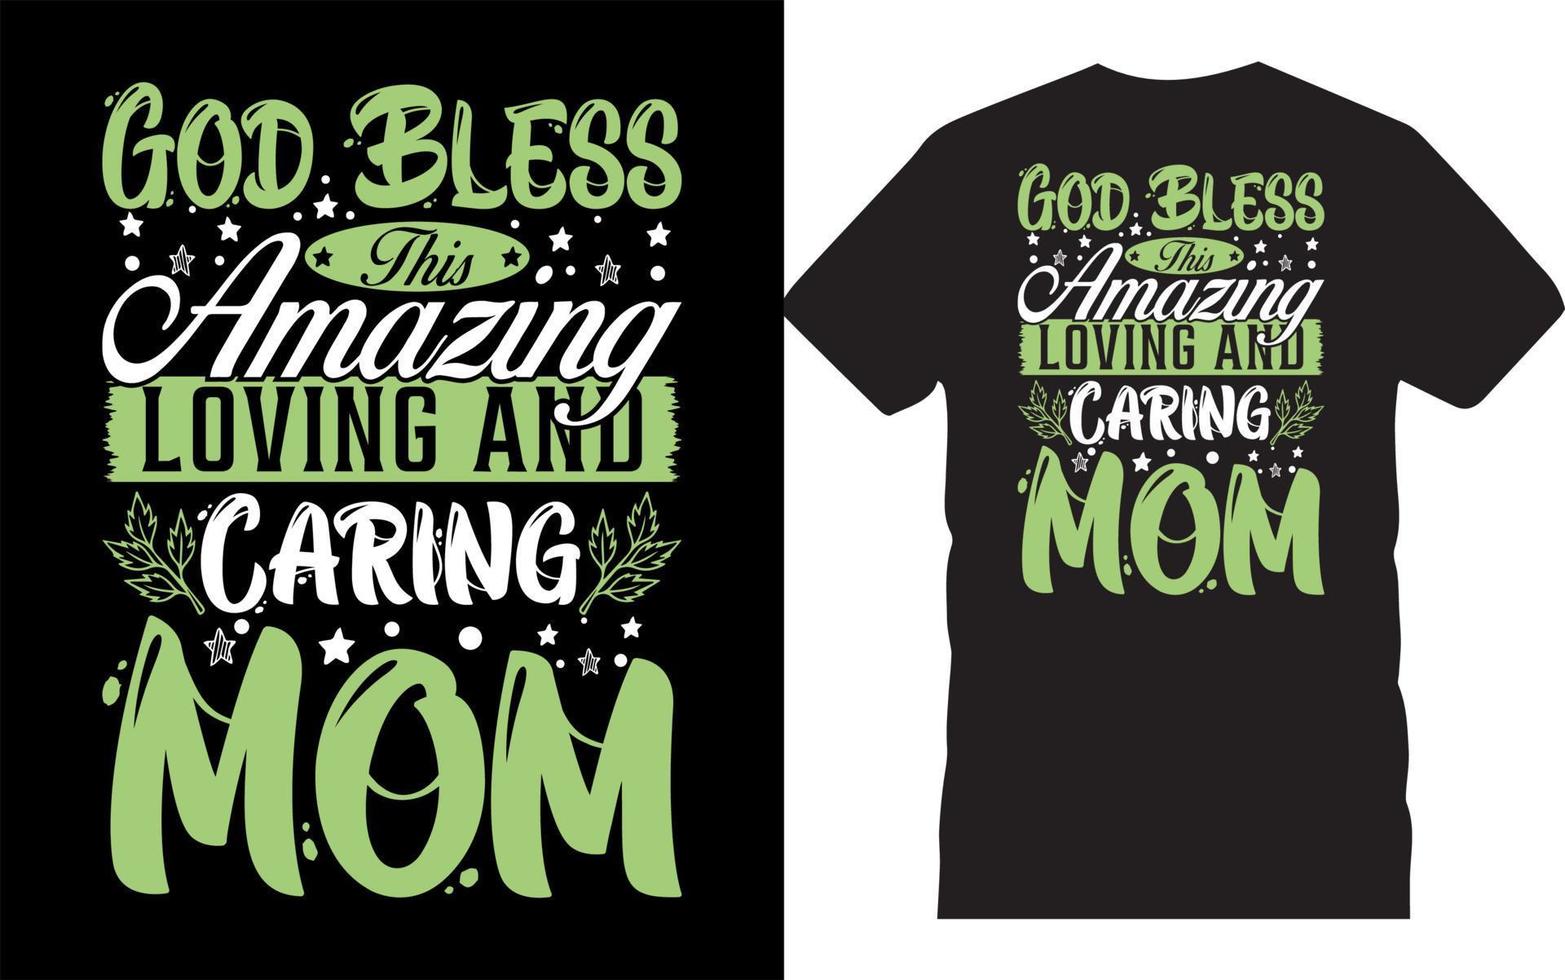 gud välsigne denna fantastiska design för t-shirt för mamma-mors dagtypografi. vektor